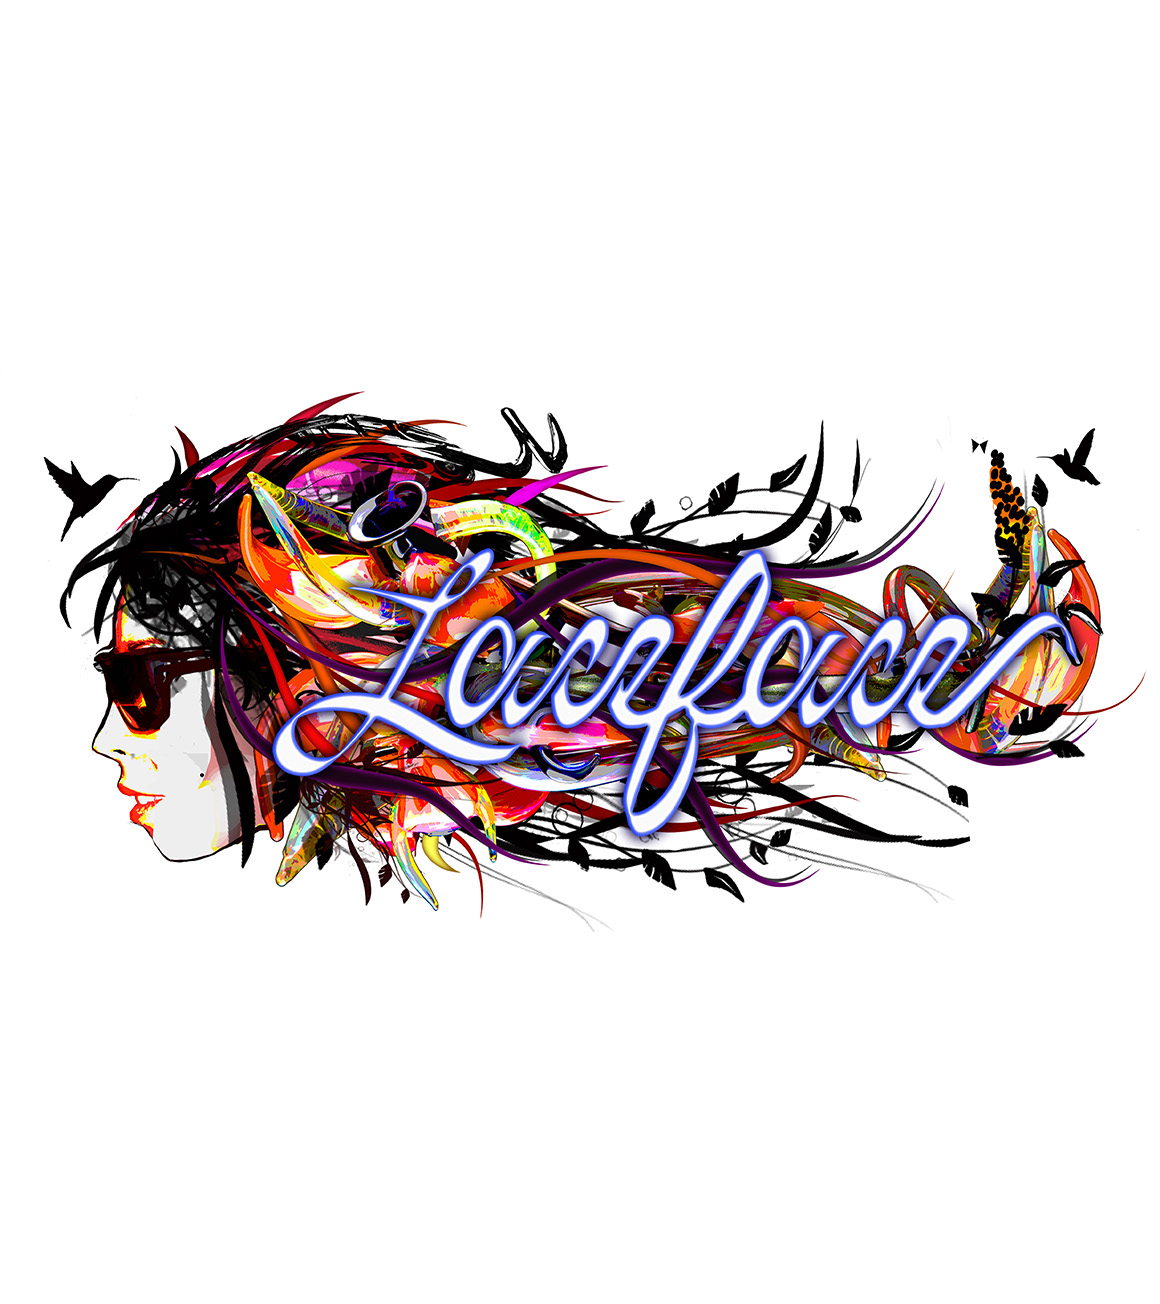 Laceface - Loop 420 Fest